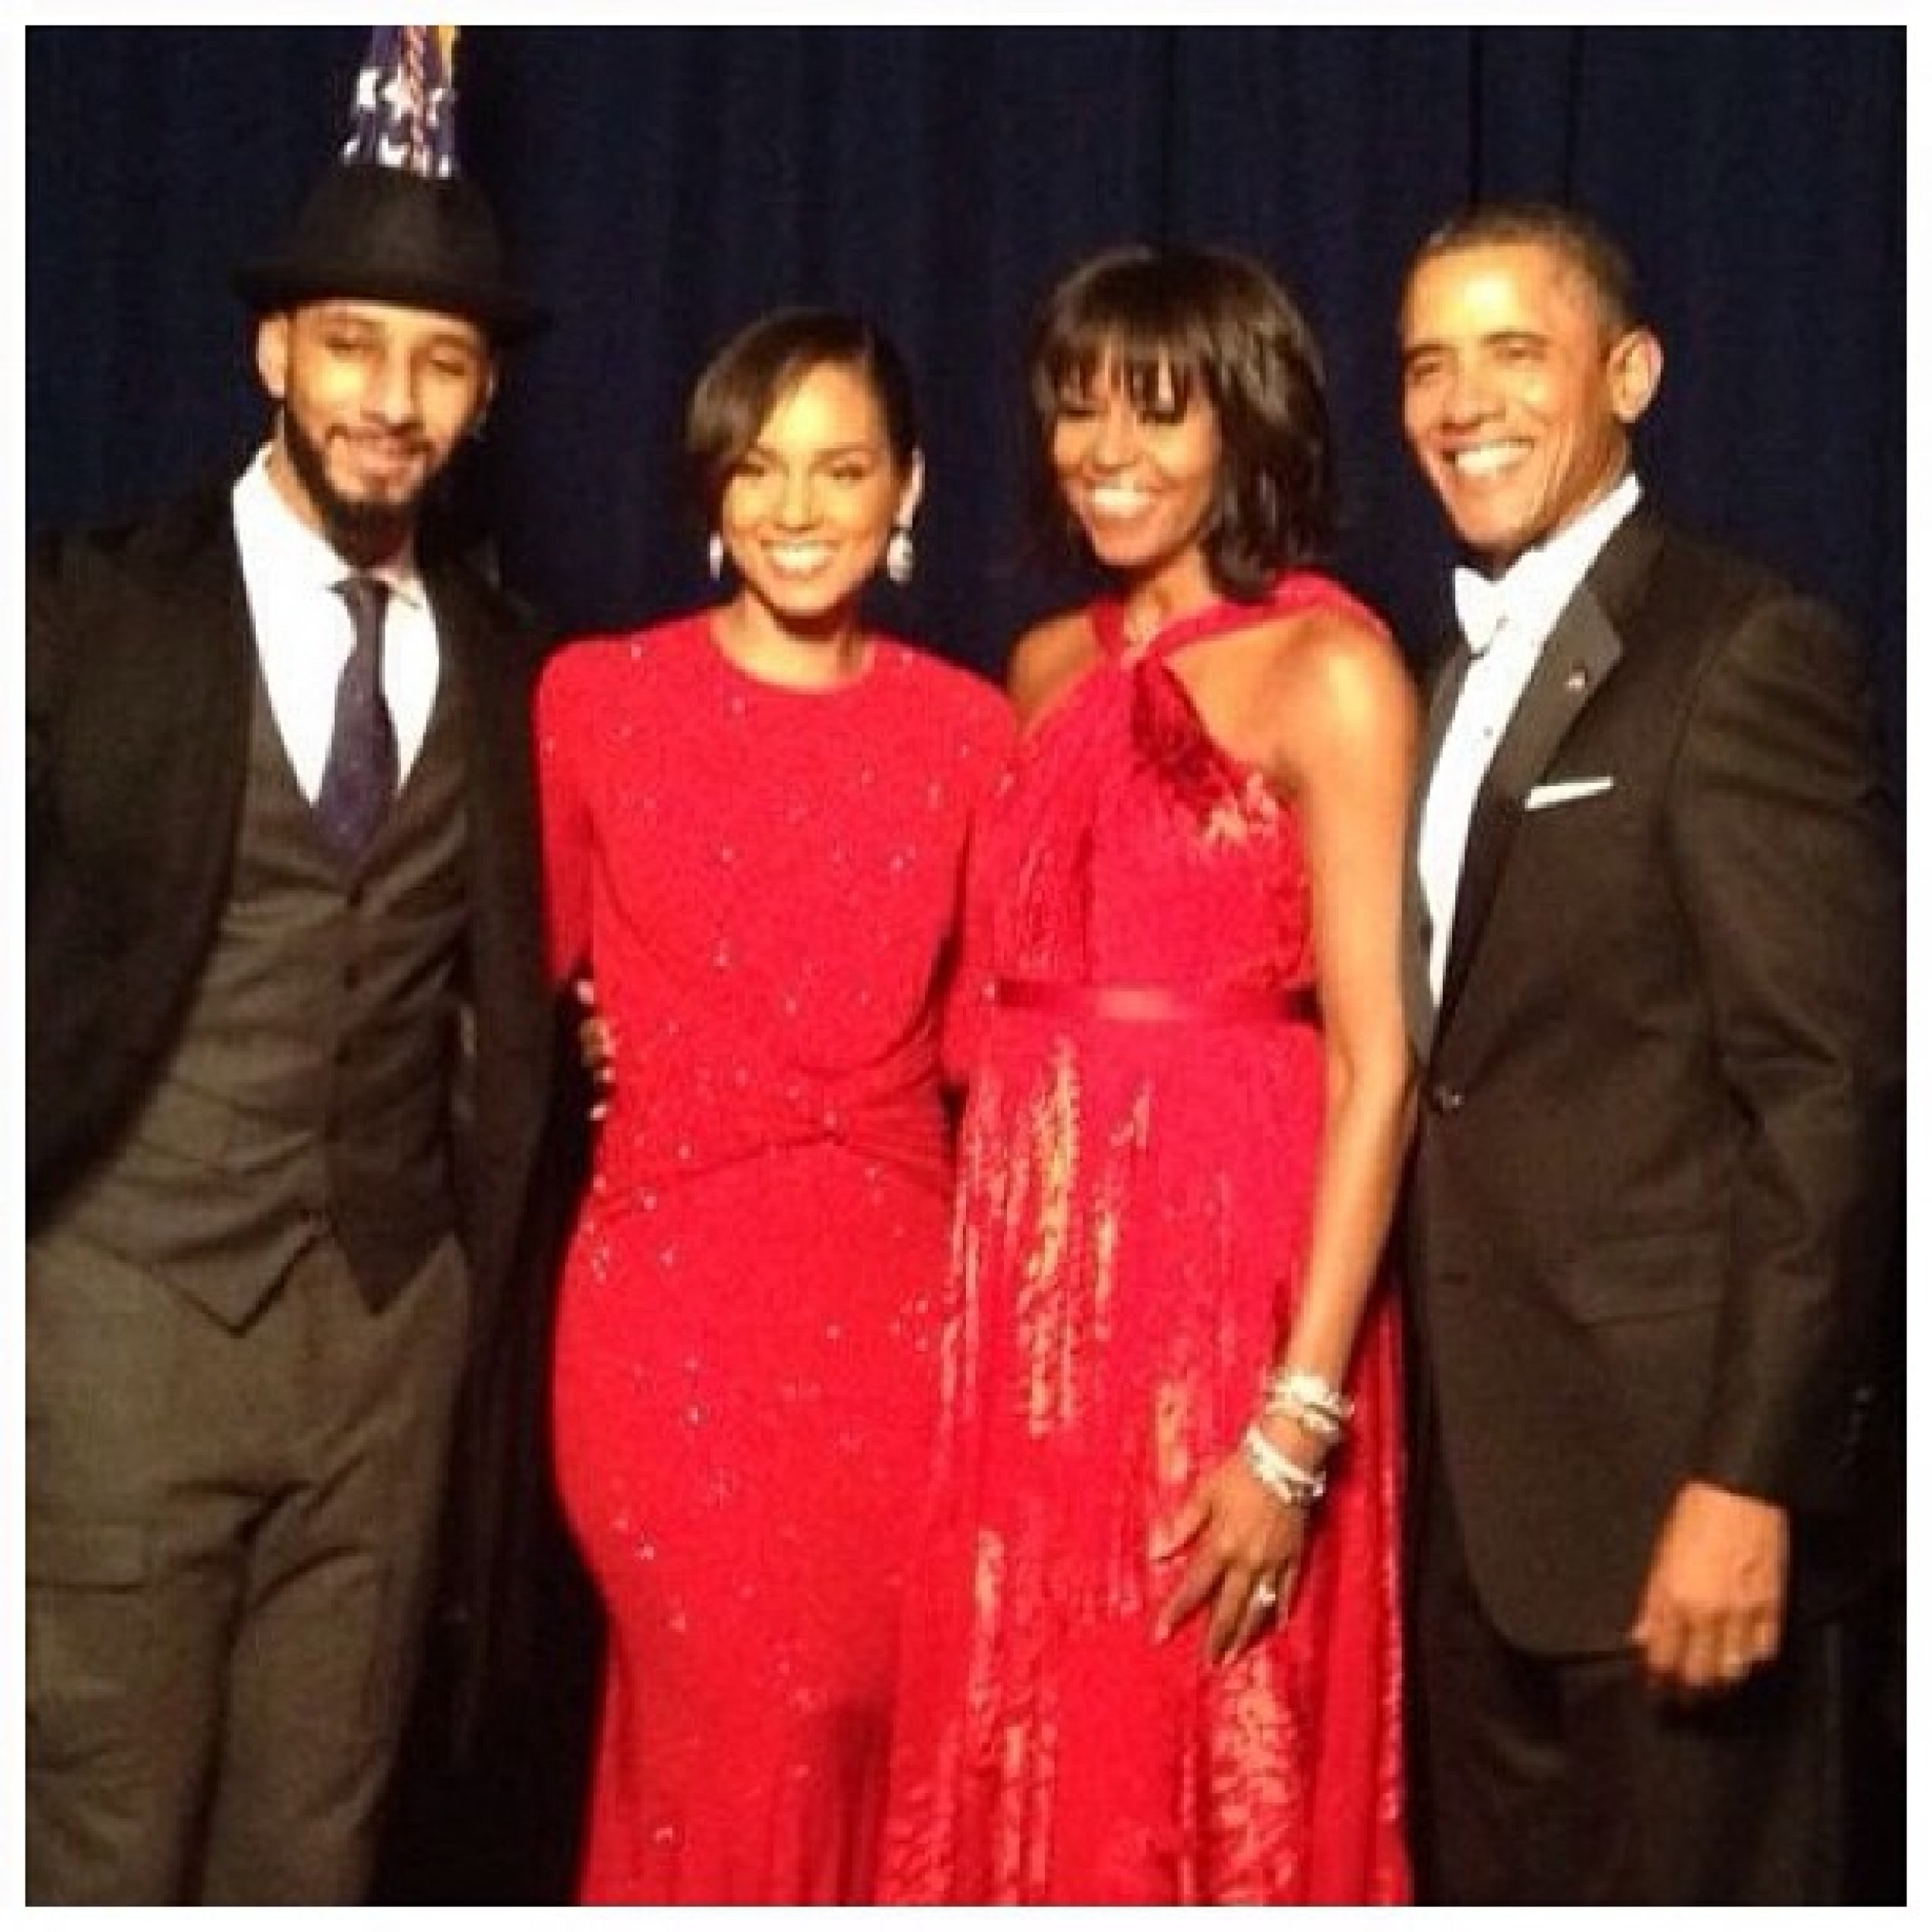 The Obamas, Swizz Beatz, and Alicia Keys